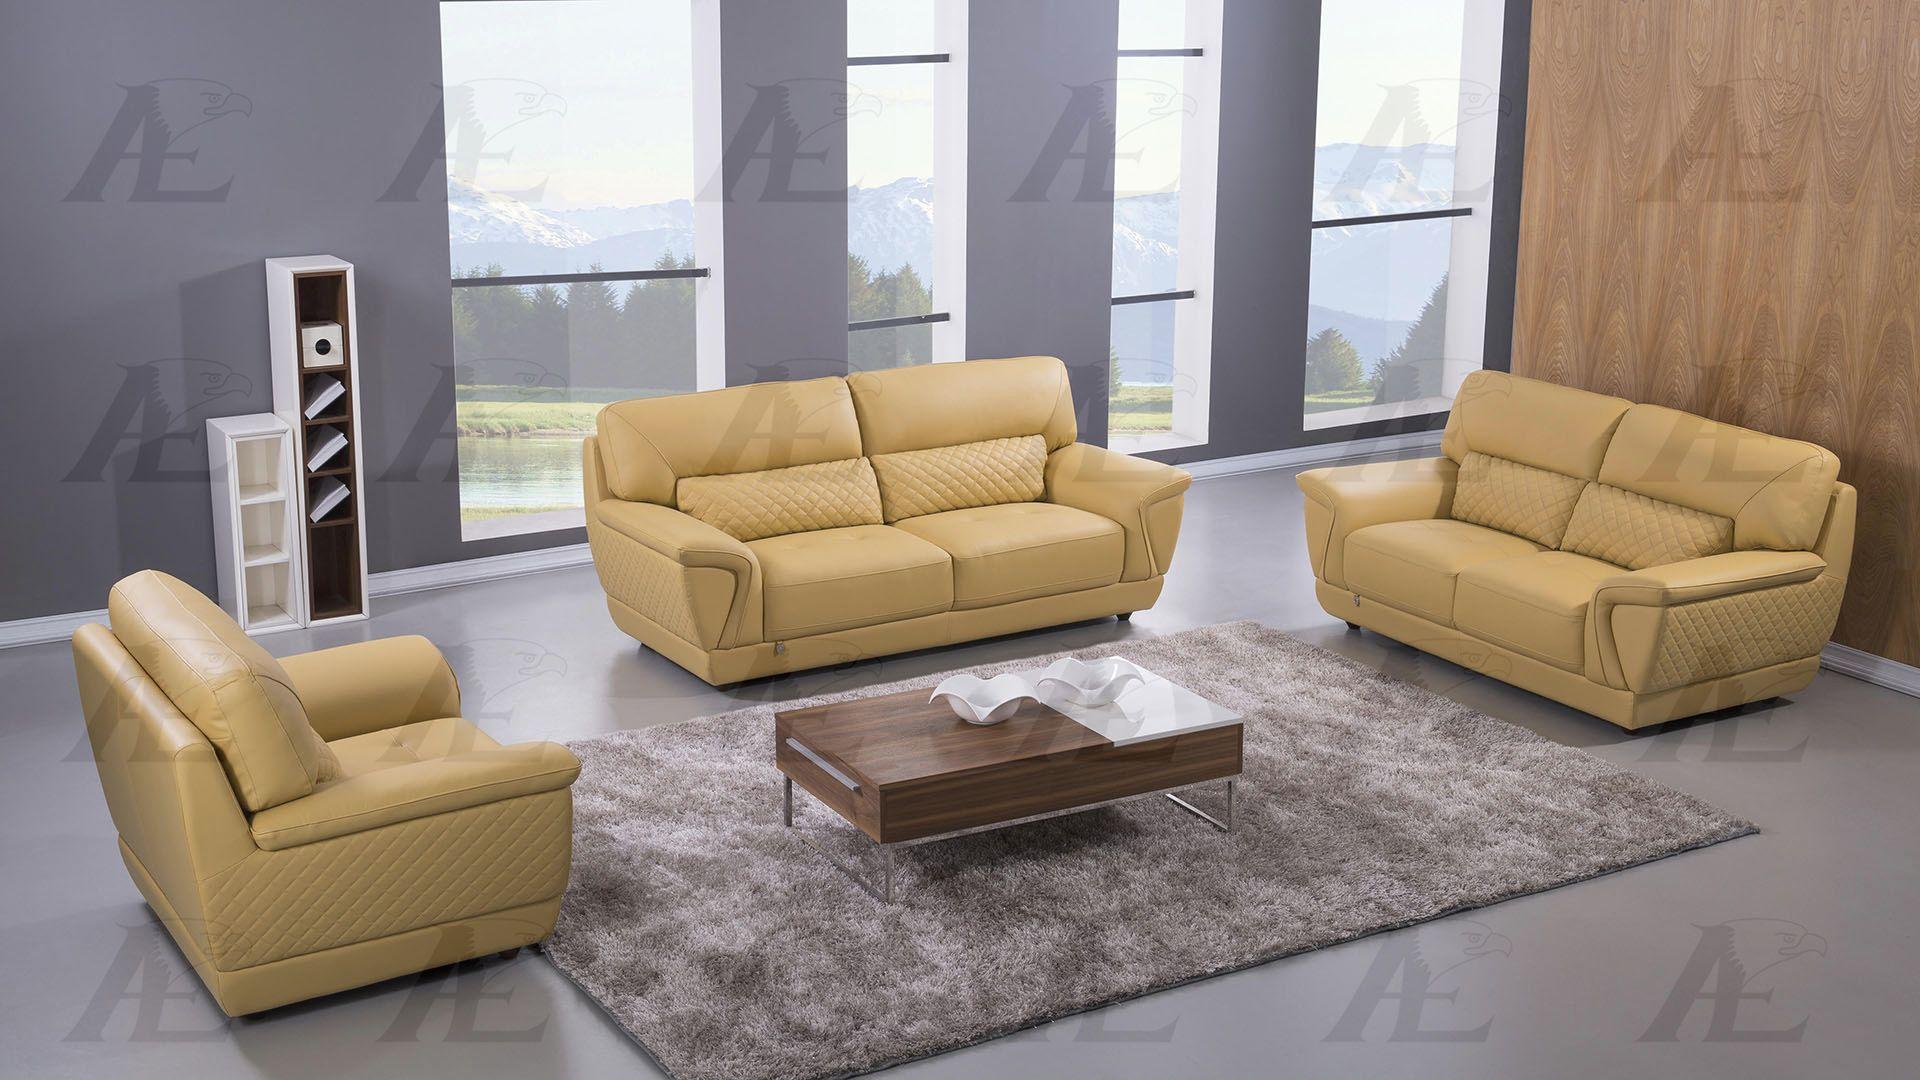 

    
American Eagle Furniture EK099-YO-SF Sofa Yellow EK099-YO-SF
